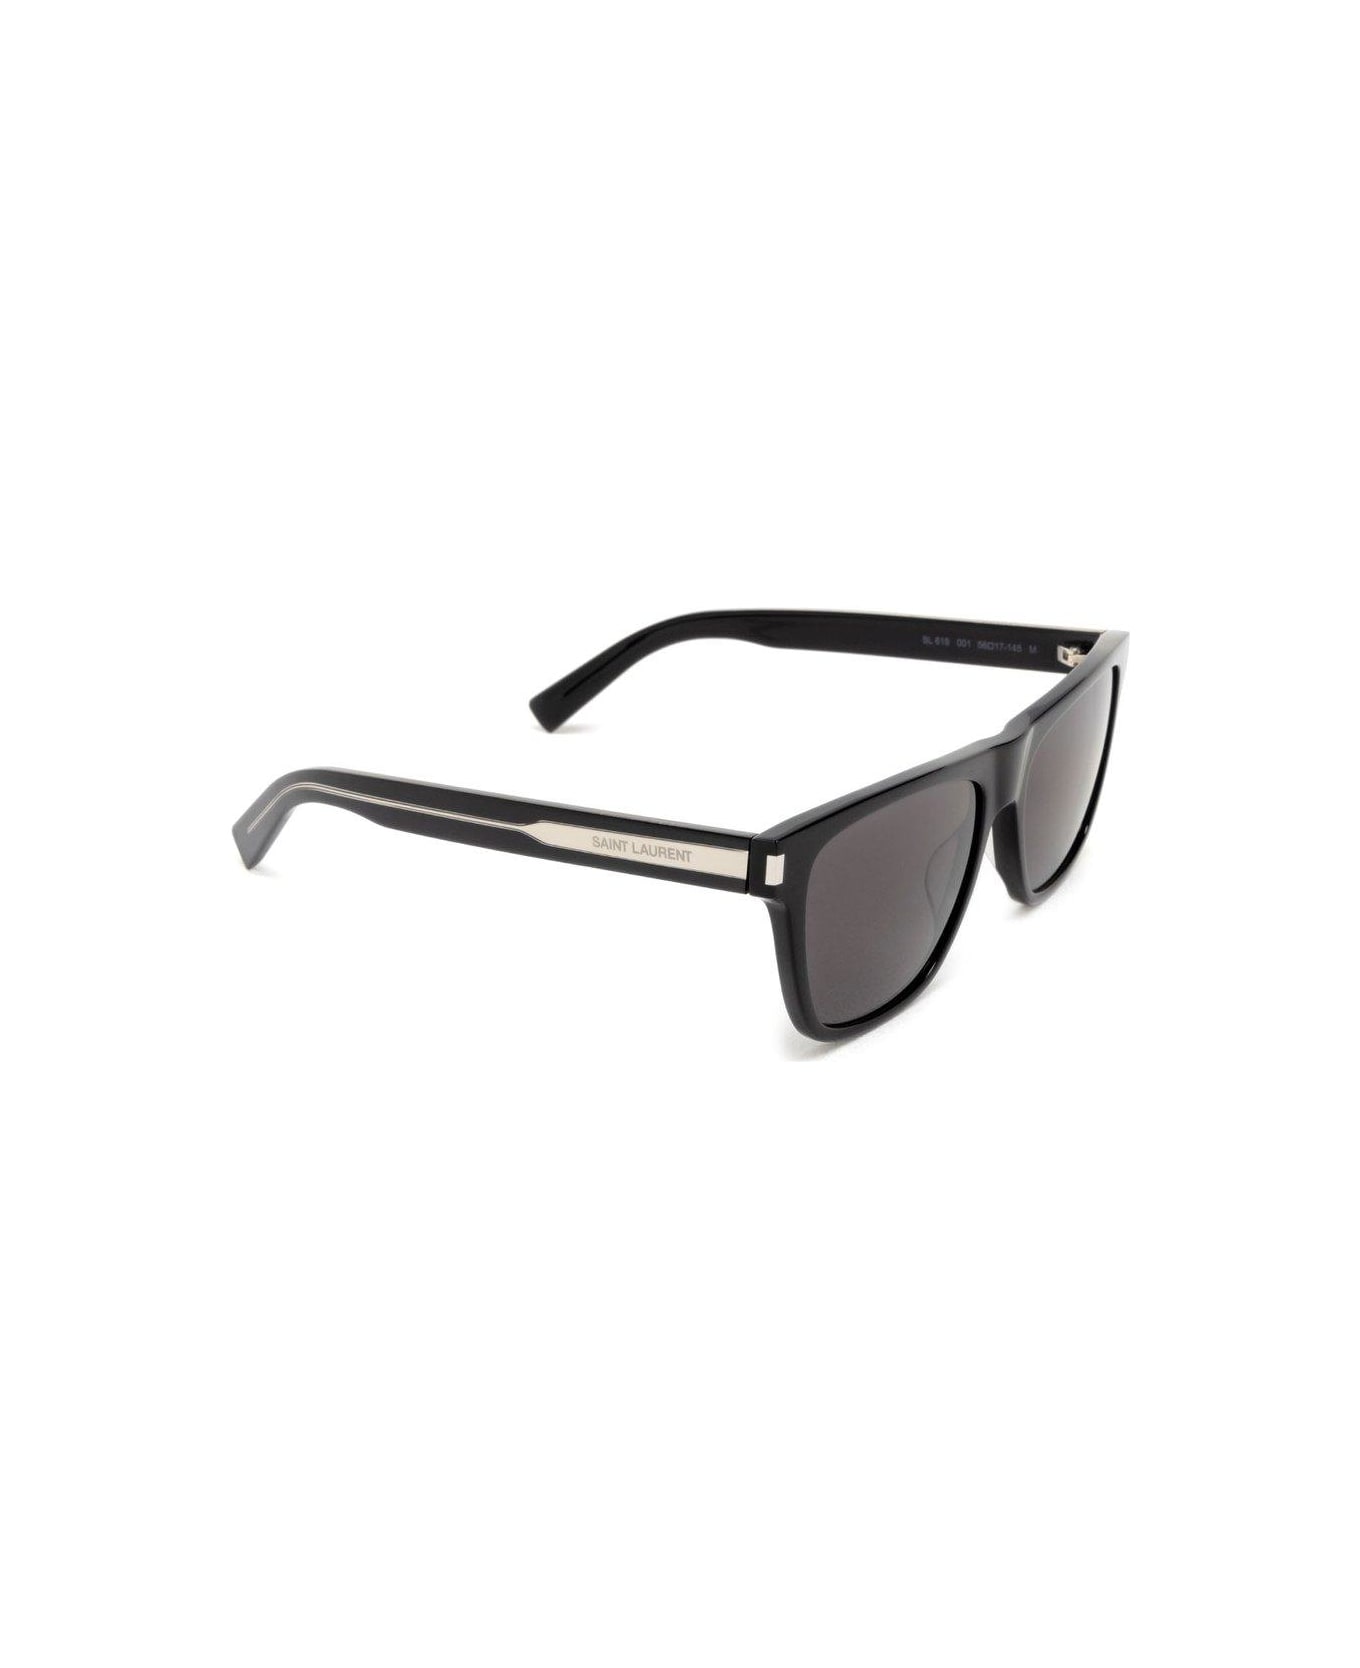 Saint Laurent Eyewear Square Frame Sunglasses Sunglasses - 001 BLACK CRYSTAL BLACK サングラス